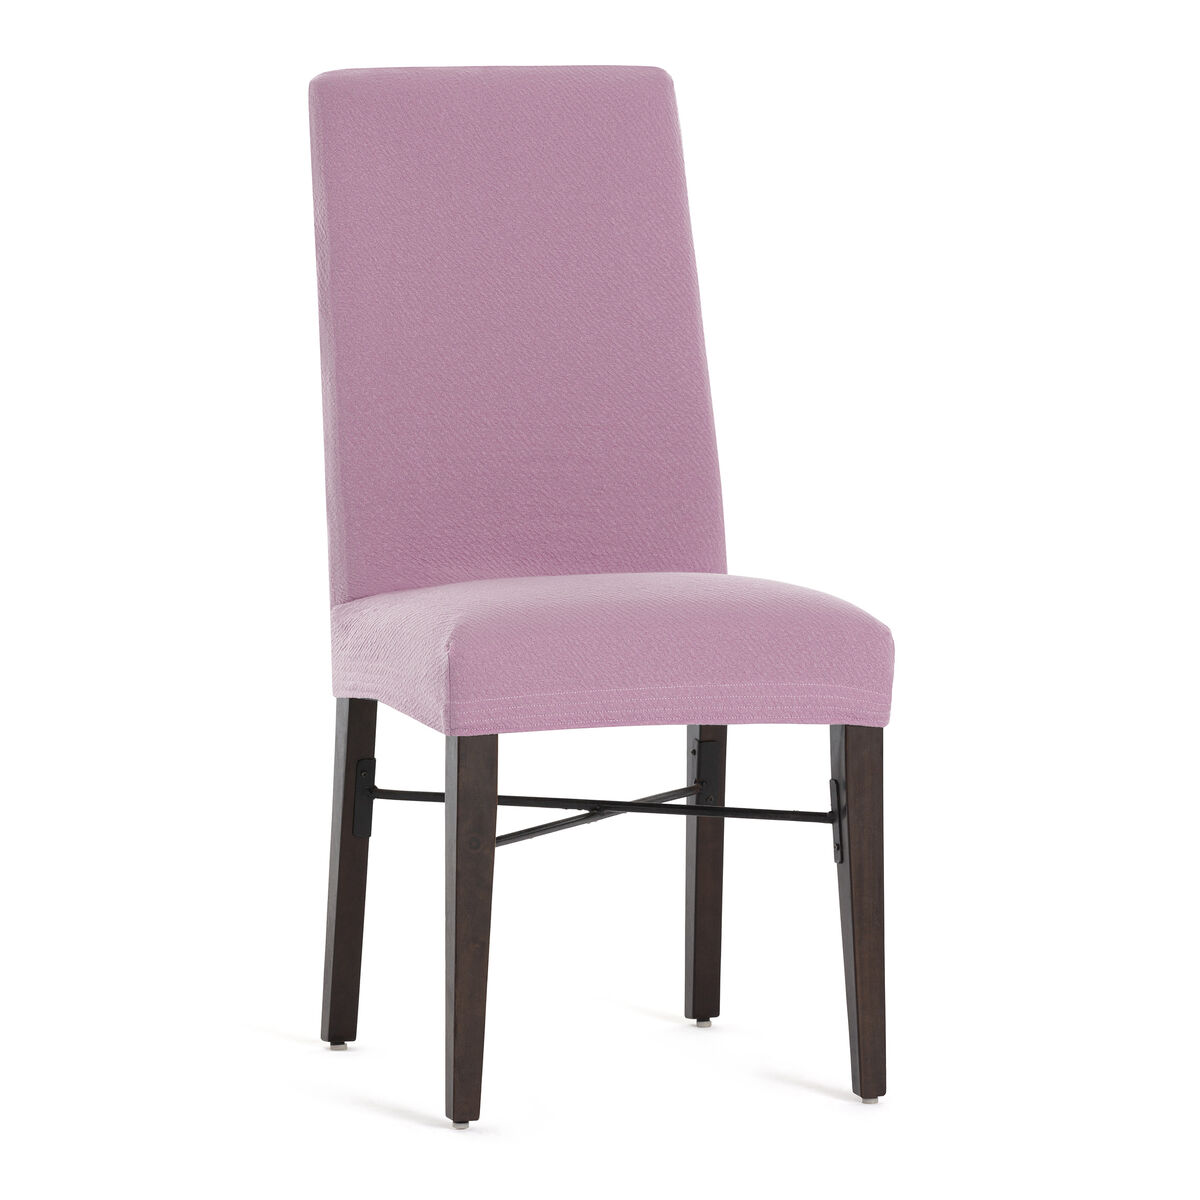 Chair Cover Eysa BRONX Pink 50 x 55 x 50 cm 2 Units